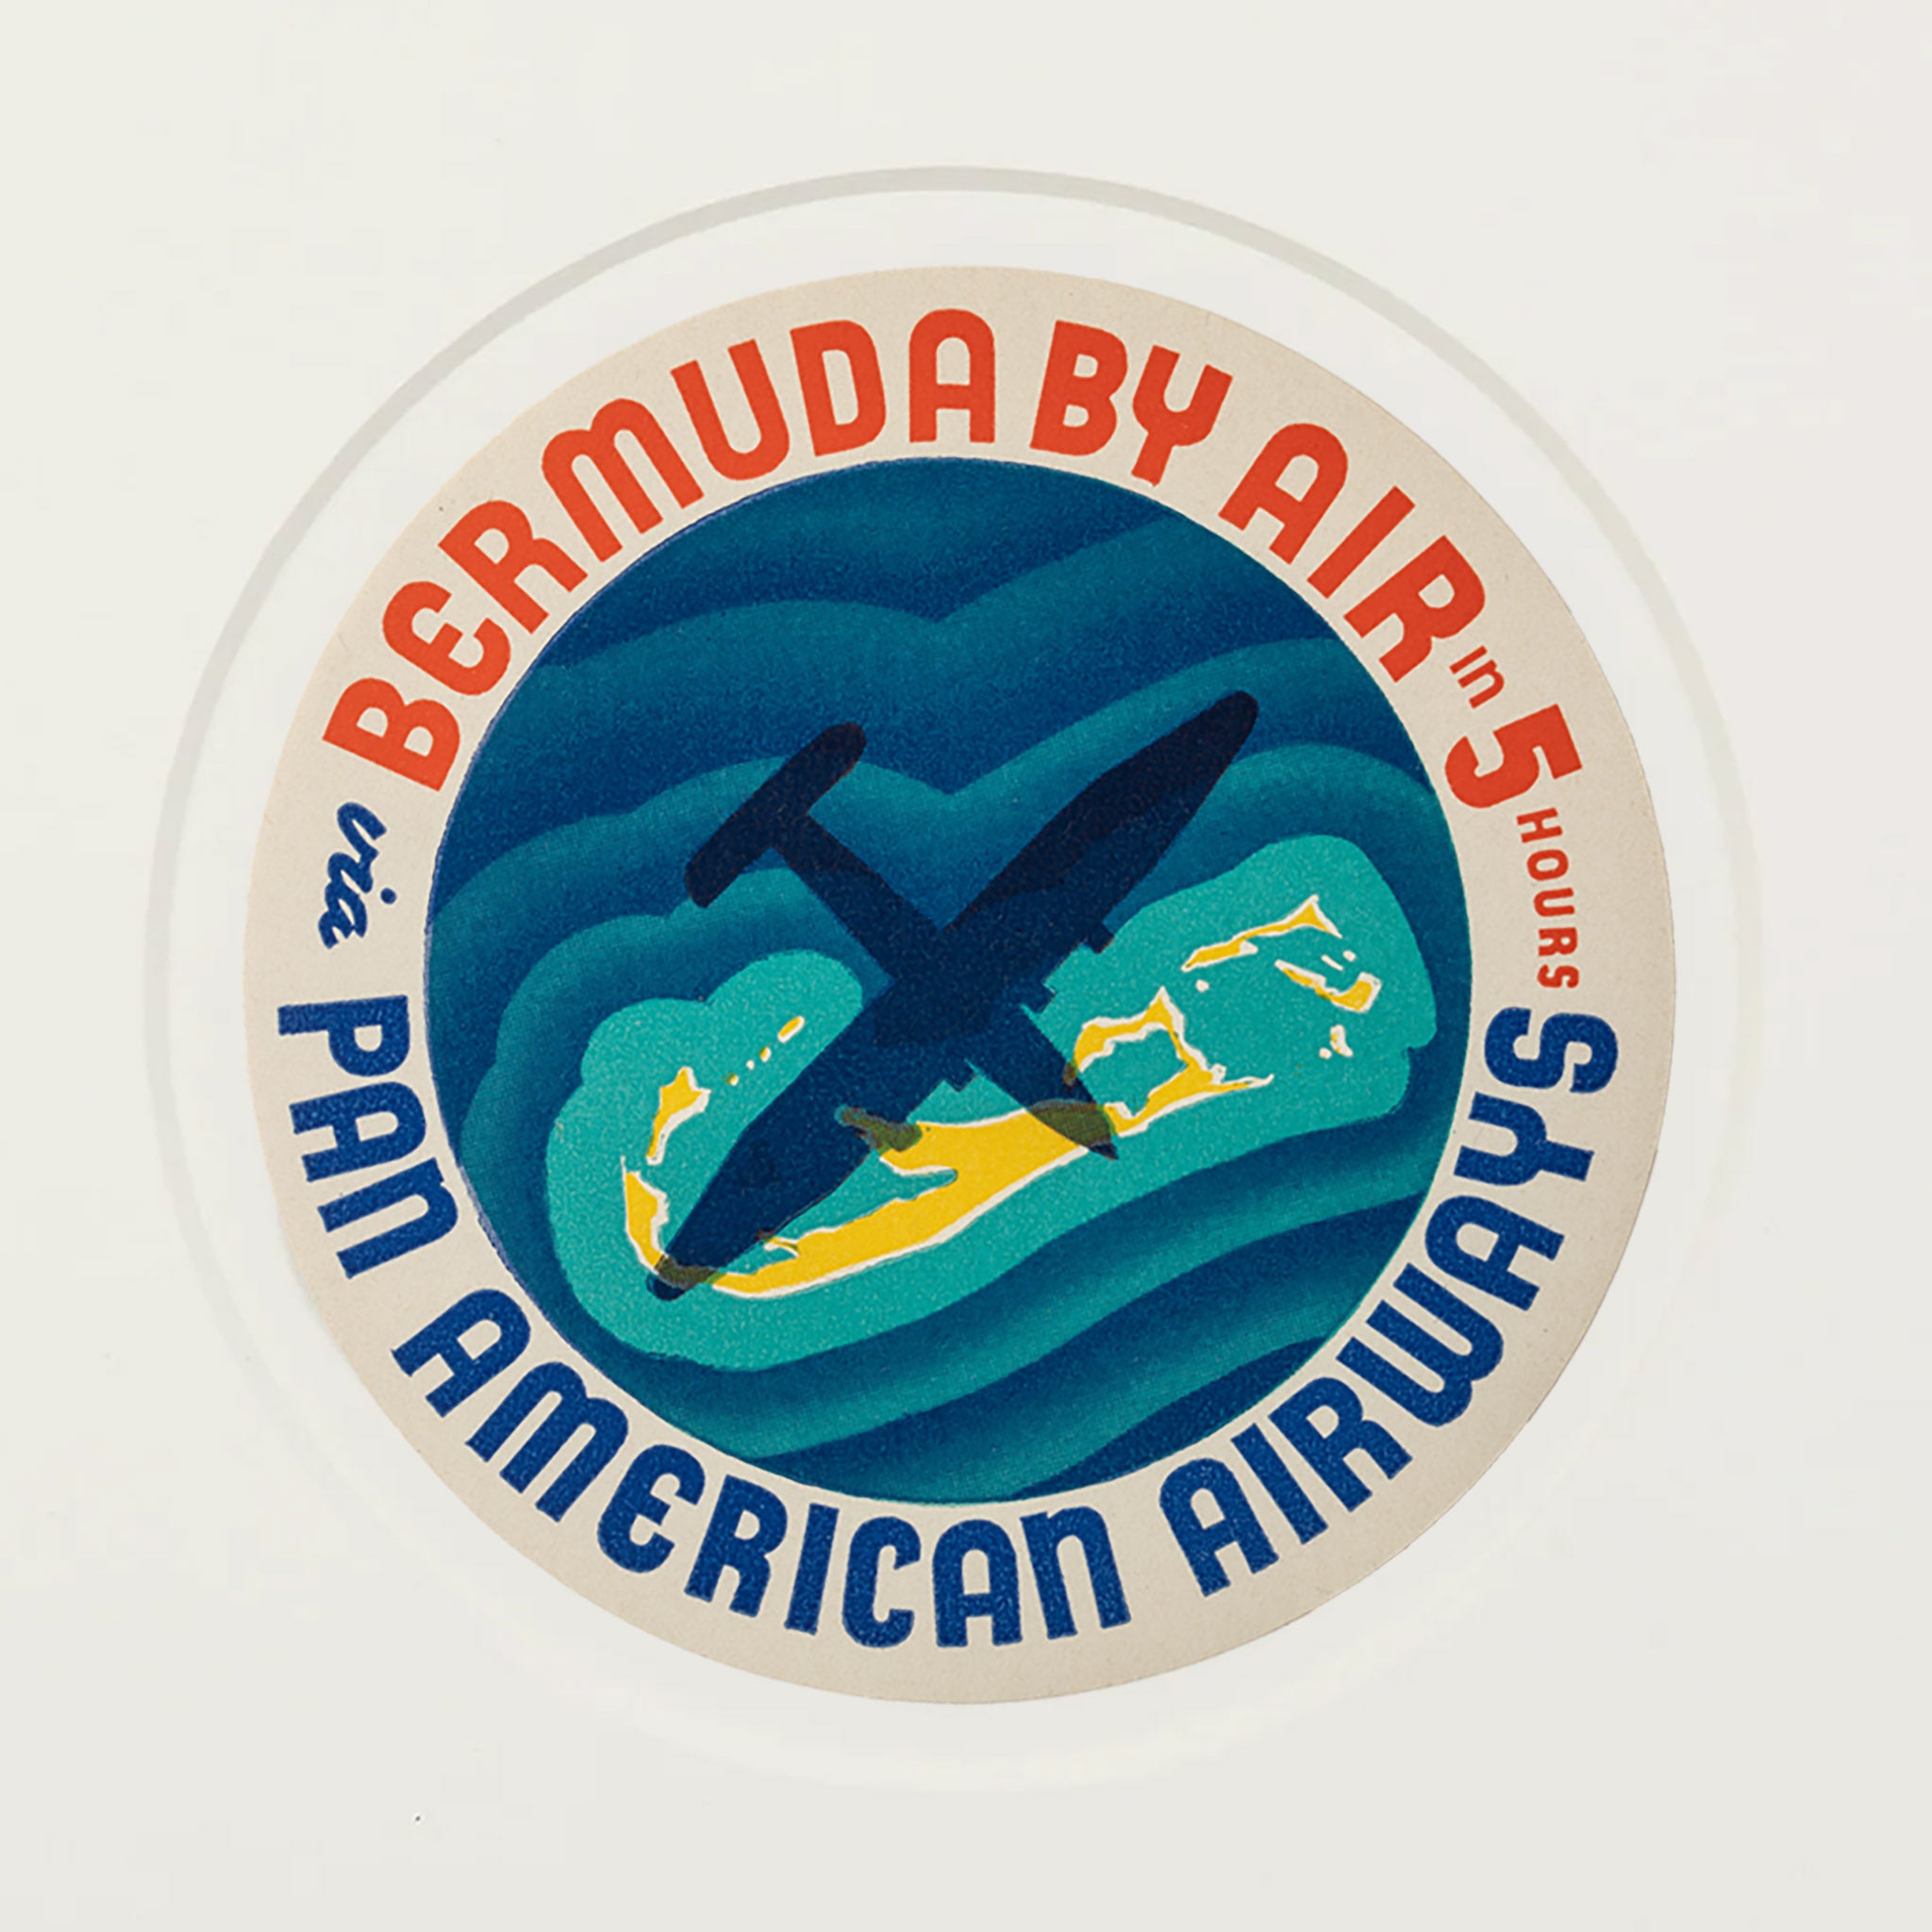 Framed Bermuda by Air Pan American Luggage Label